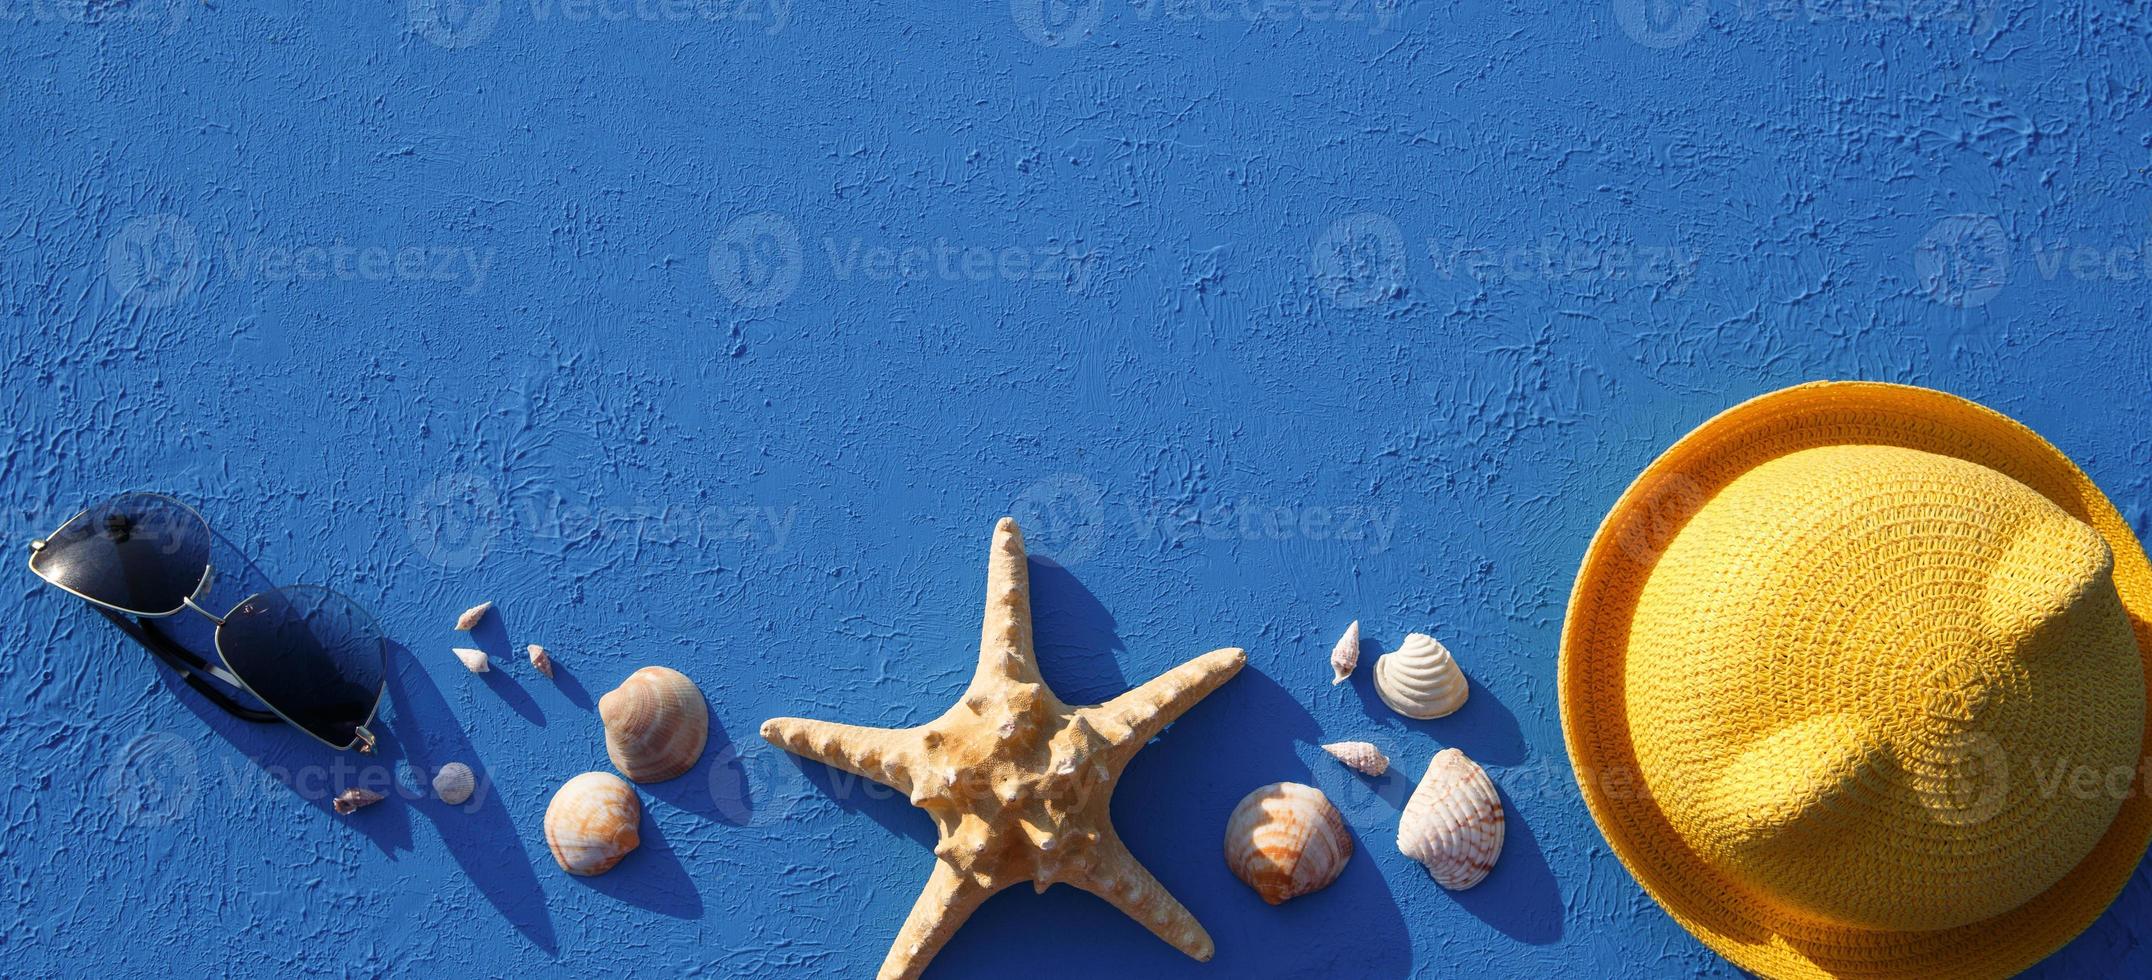 marco con accesorios de playa sobre un tema náutico sombrero de paja amarillo, gafas de sol, estrellas de mar y conchas sobre un fondo azul. concepto de vacaciones, viaje por mar, protección uv, natación. copie el espacio plano foto